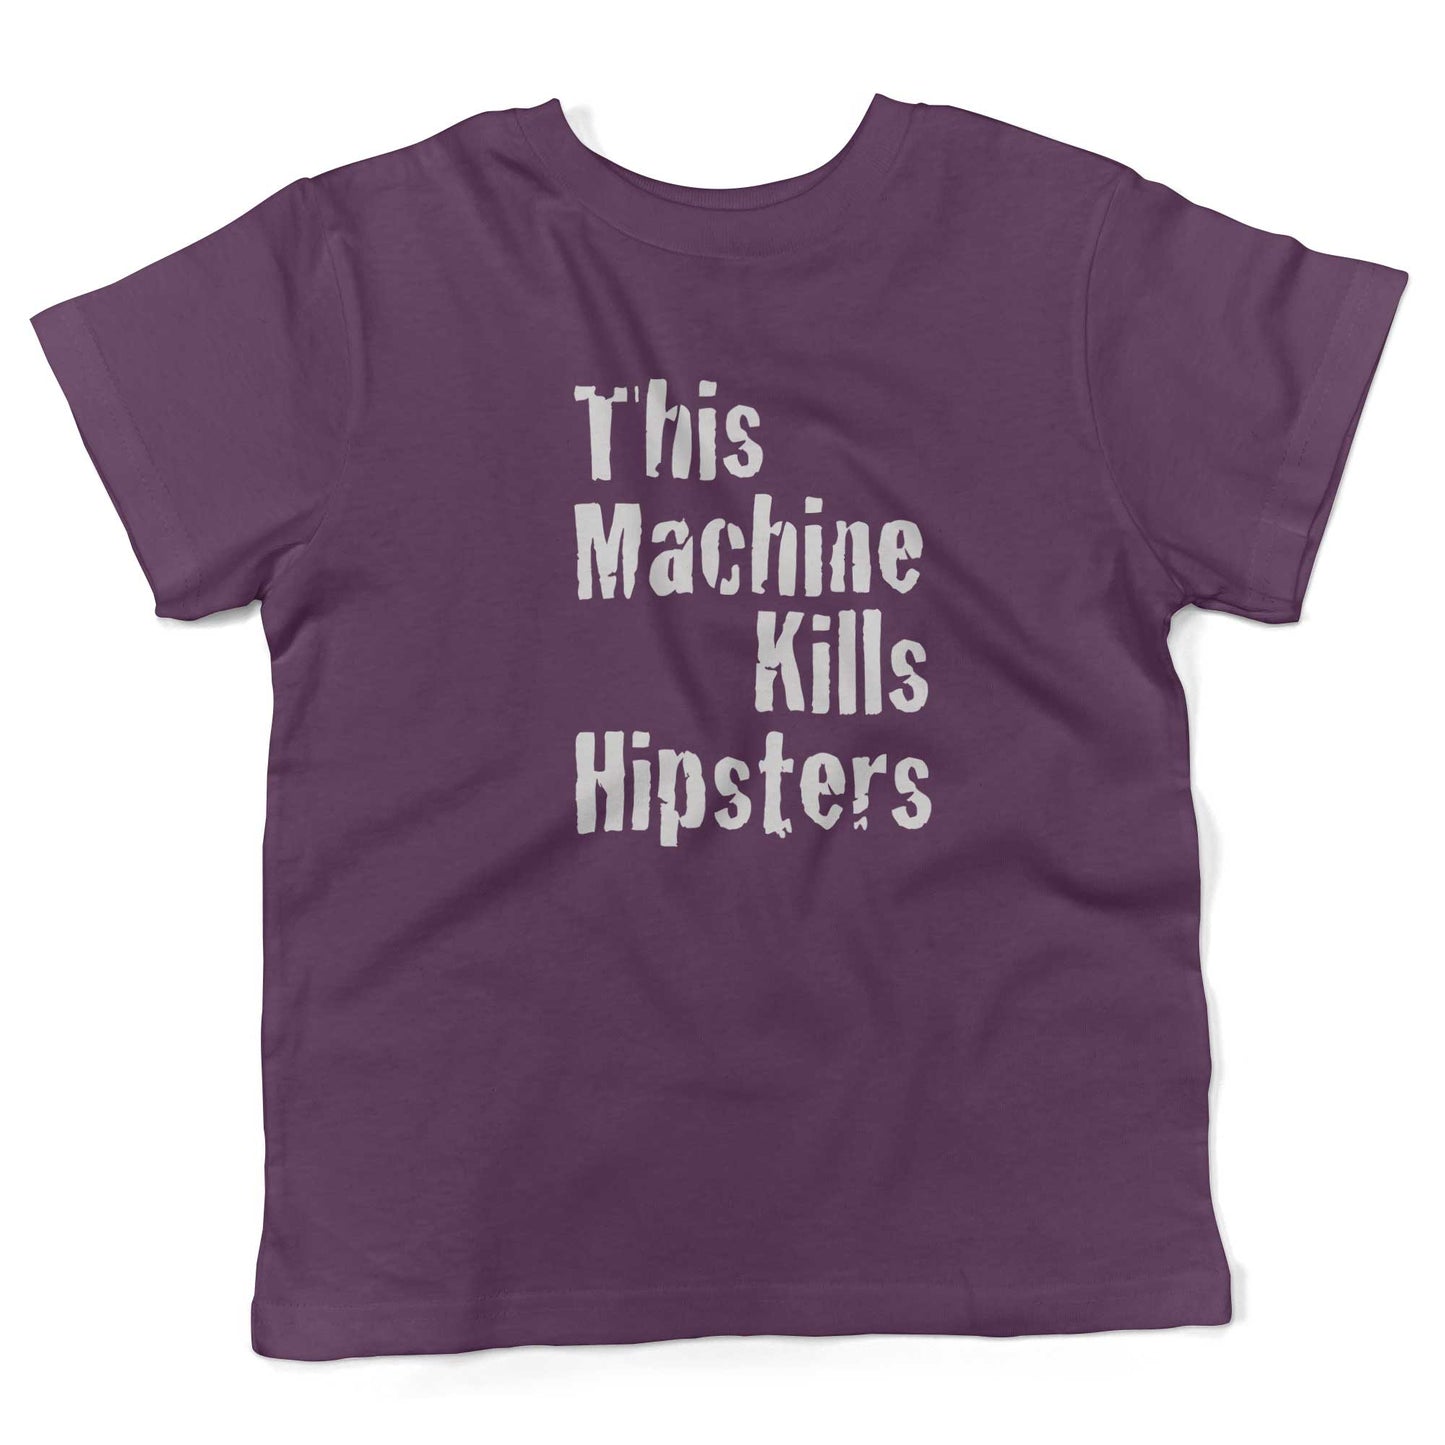 This Machine Kills Hipsters Toddler Shirt-Organic Purple-2T